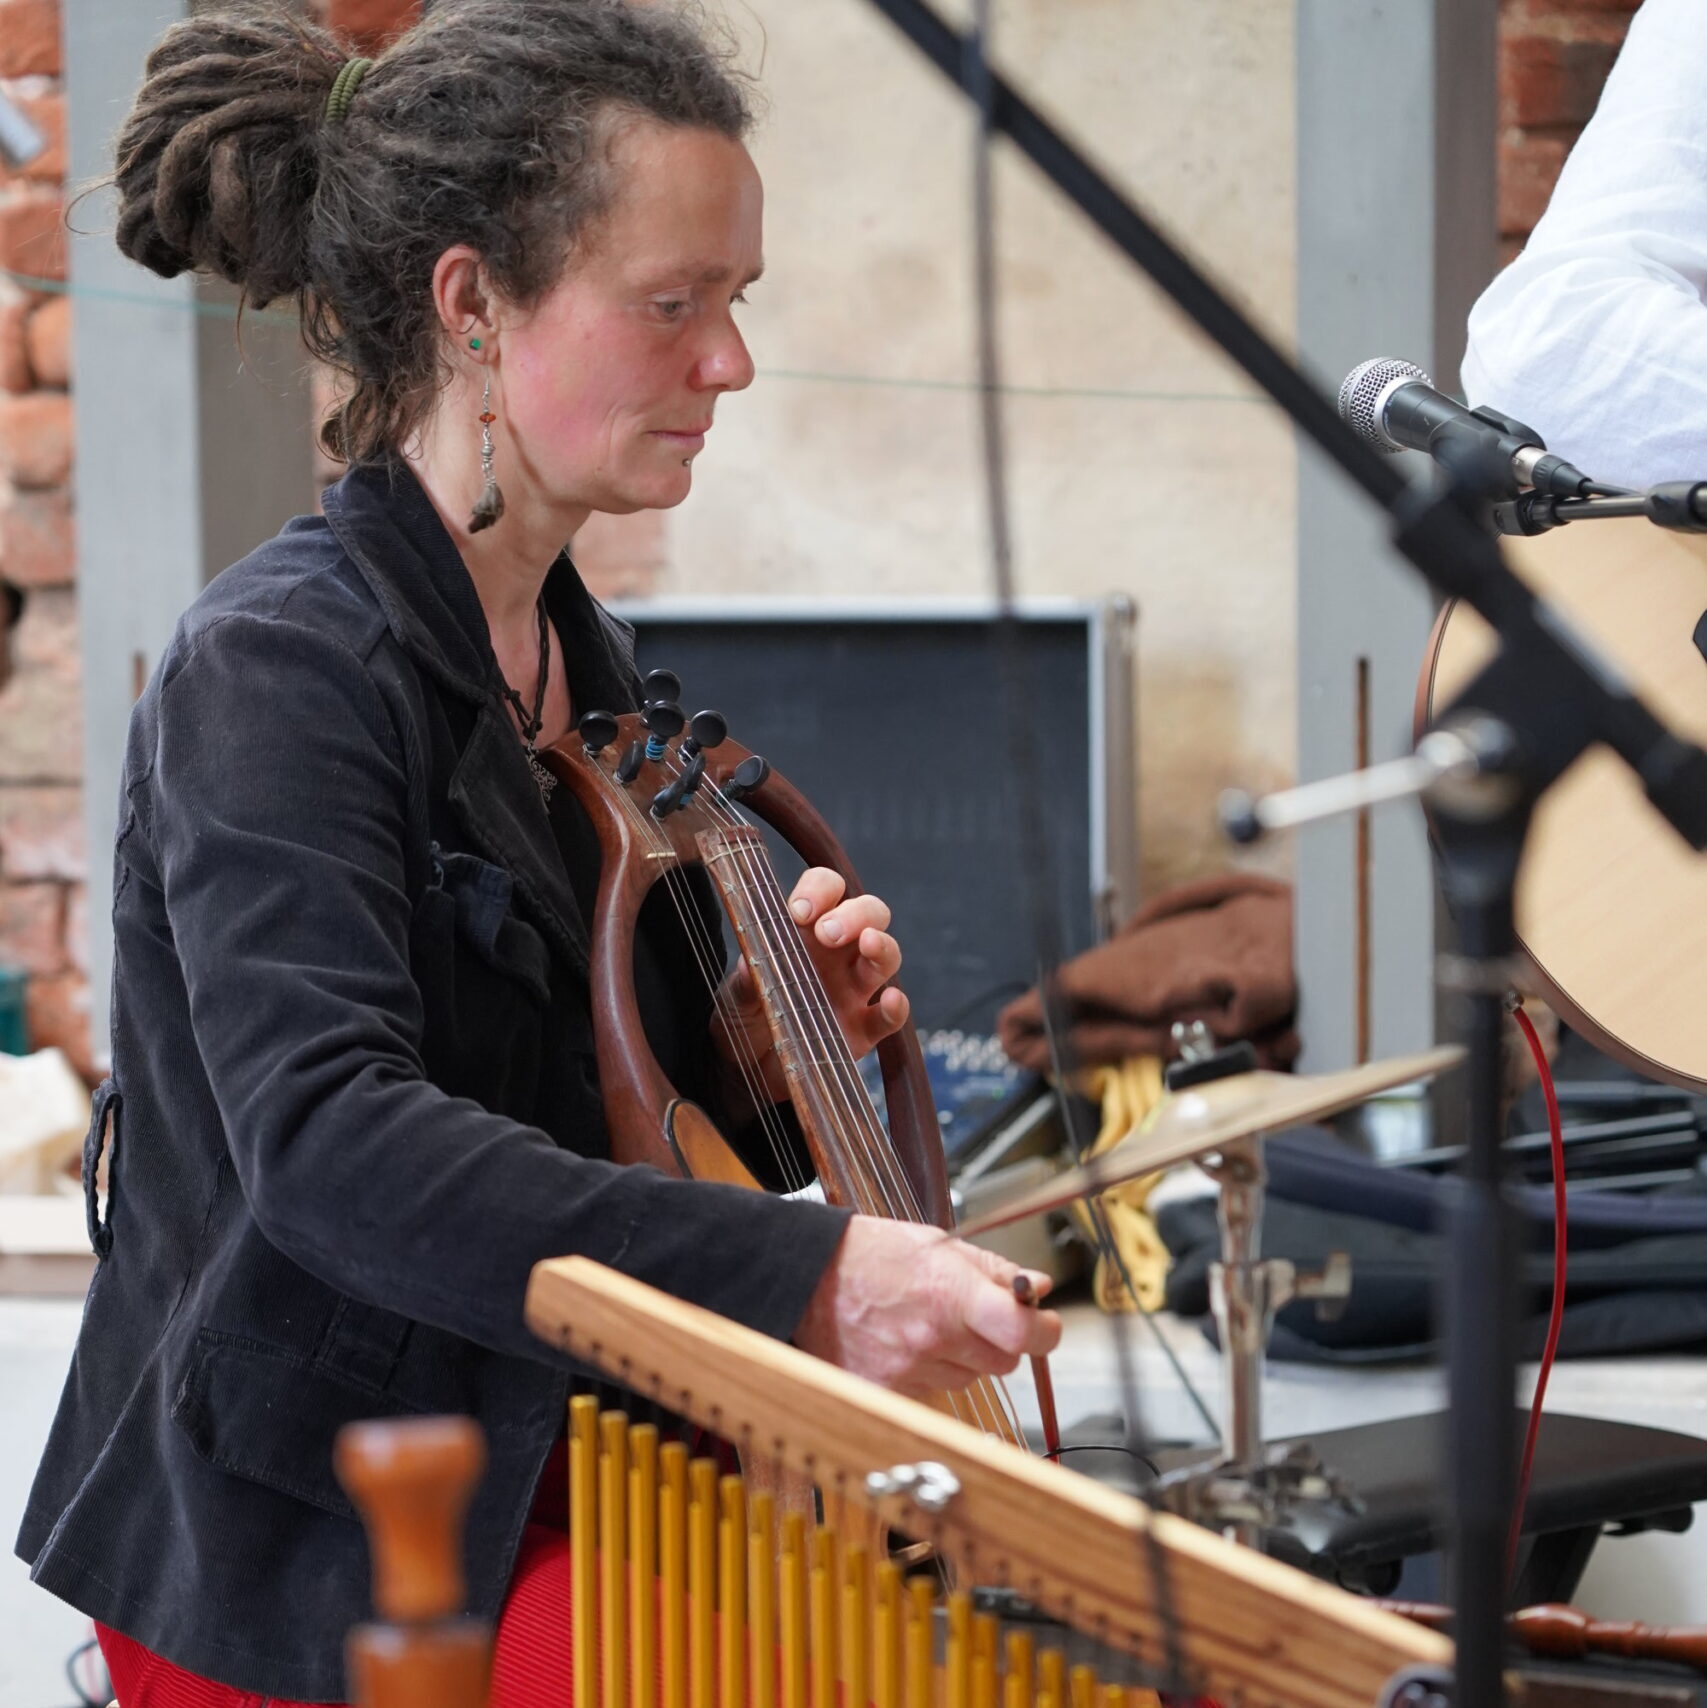 Silvia „Liese“ Needon musiziert auf ihrer Fidel. Zahlreiche Perkussionsinstrumente sowie technisches Equipment umgeben sie.